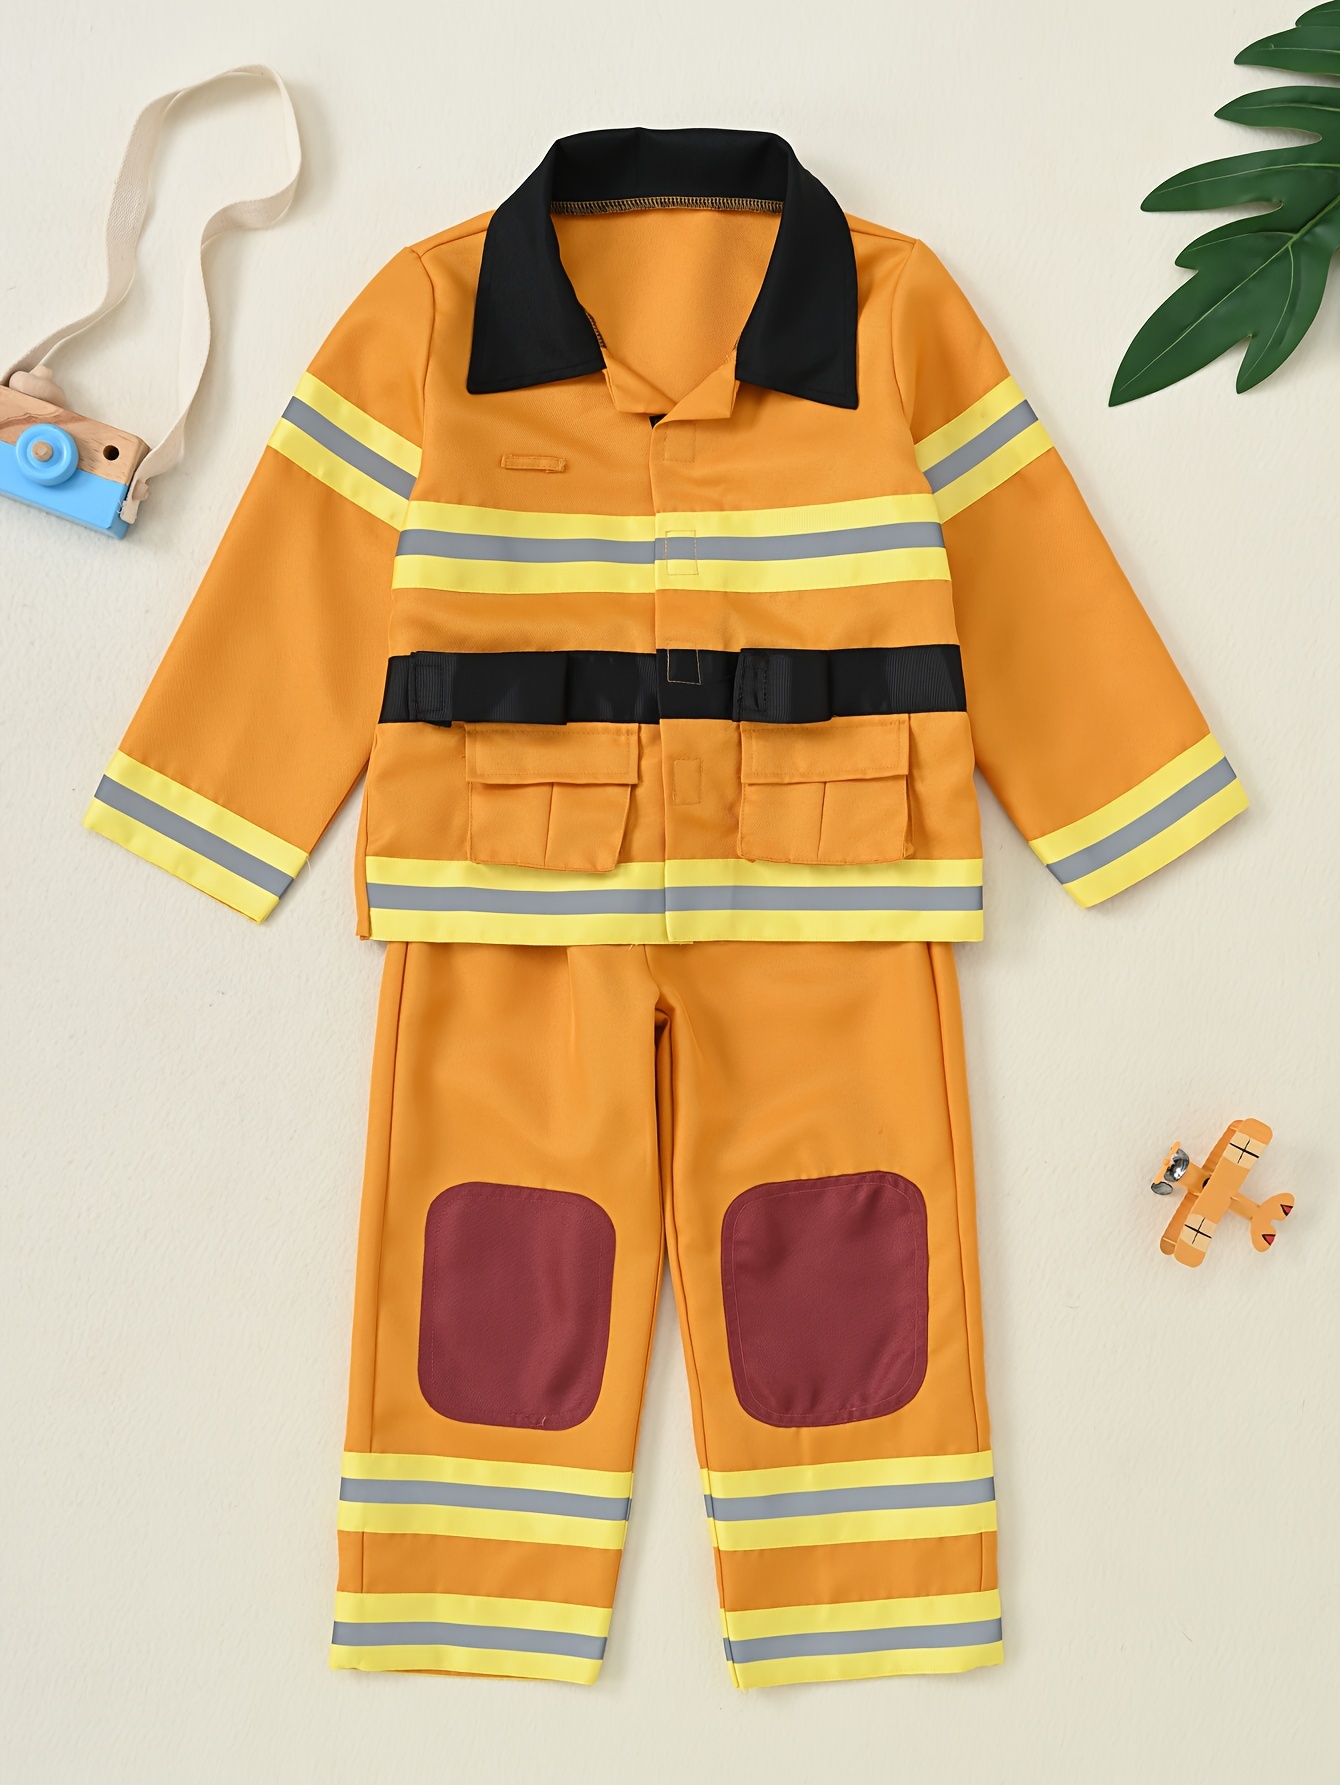 Disfraz de bombero para niños y estudiantes de secundaria, traje